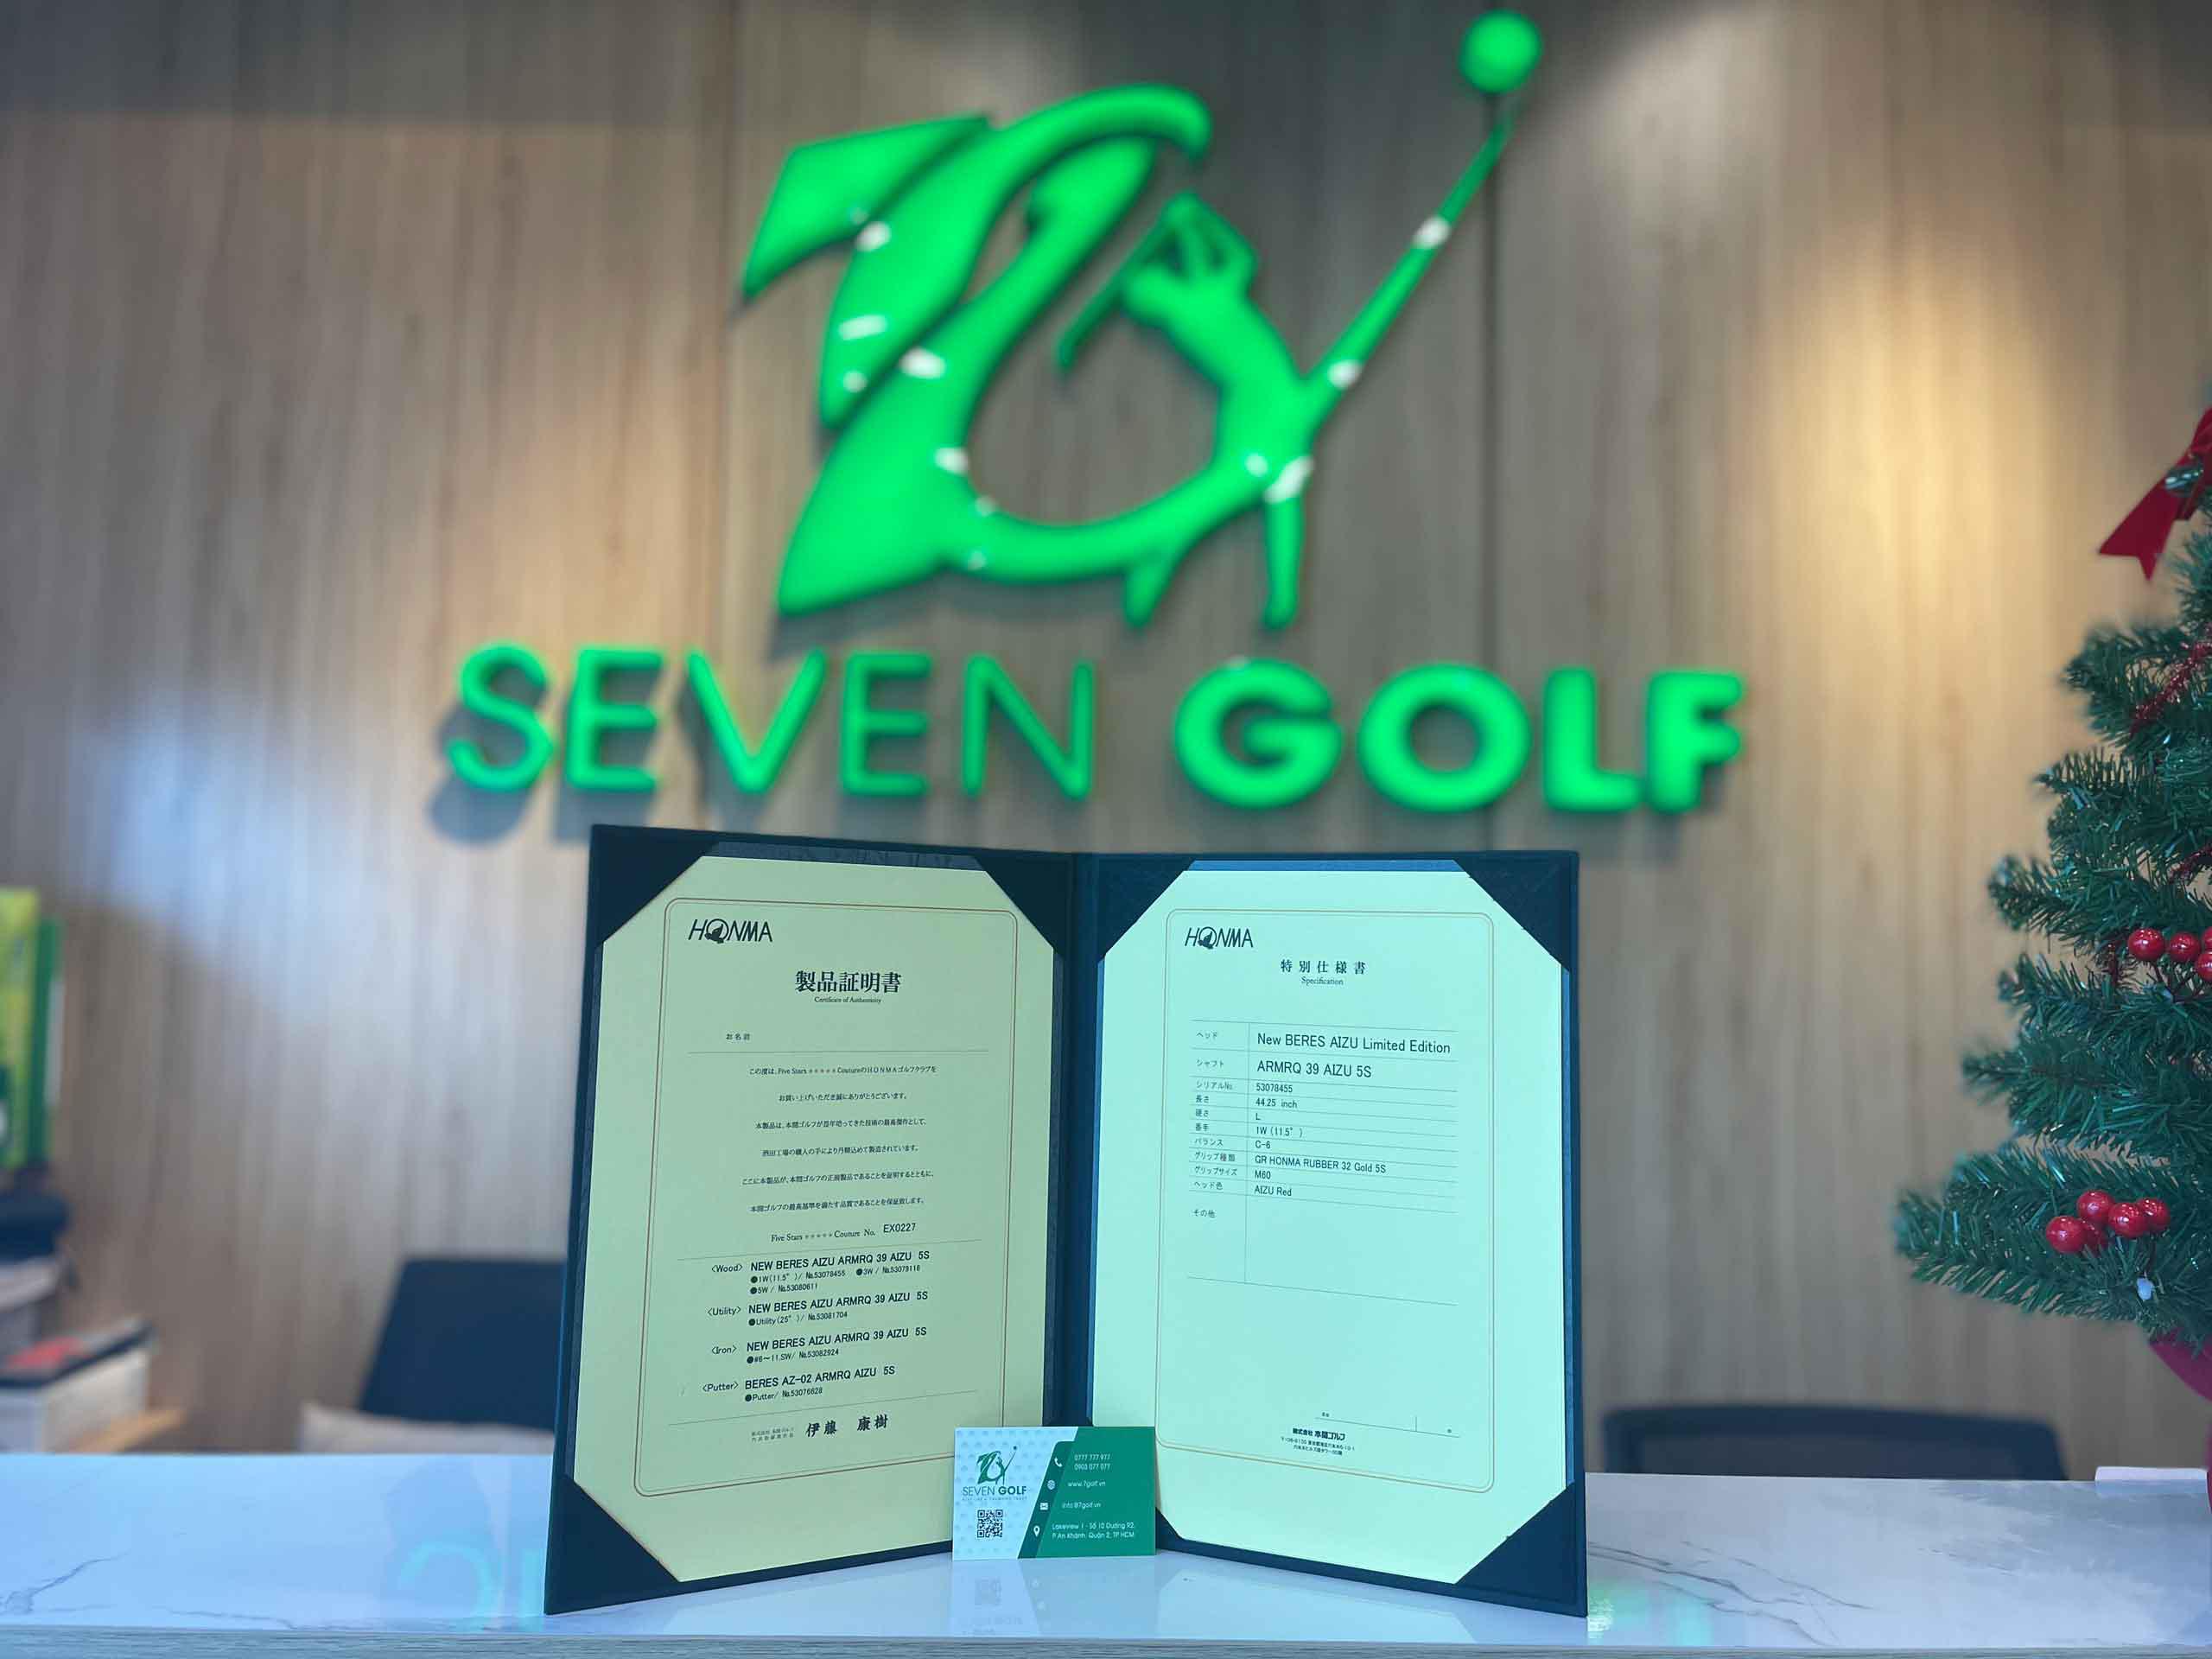 7Golf là đại lý chính thức của Honma Golf Việt Nam